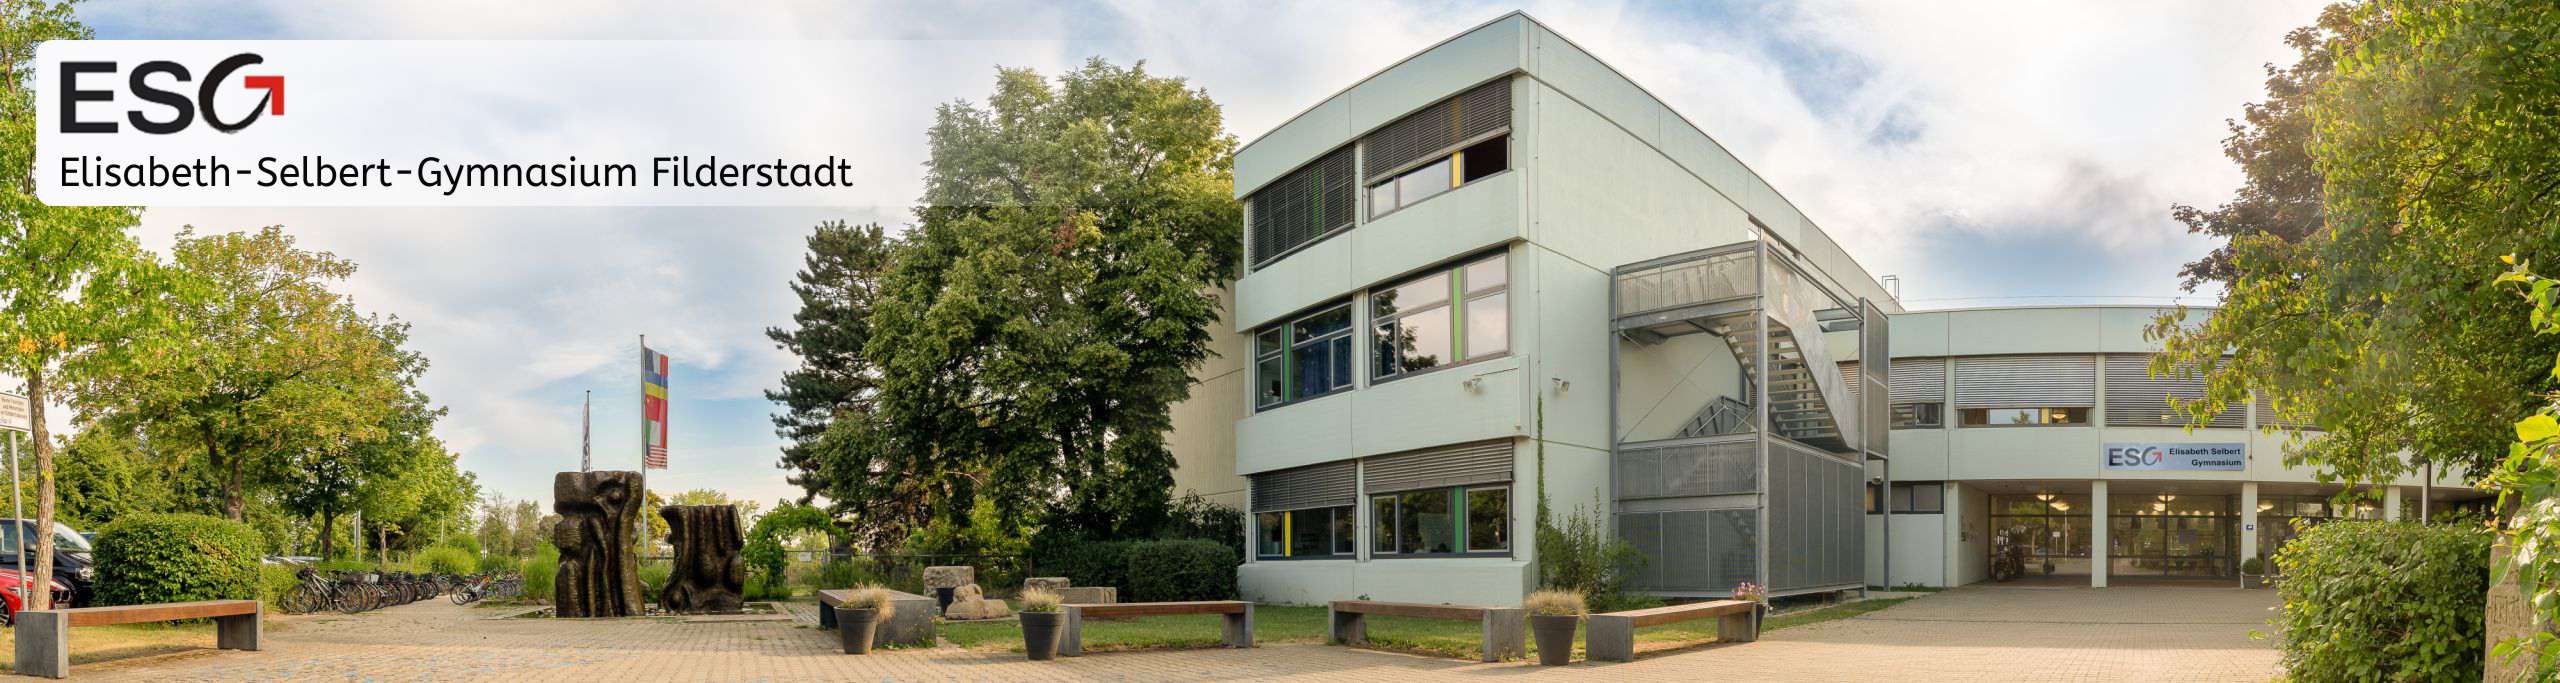 Elisabeth-Selbert-Gymnasium - Filderstadt (ESGF)